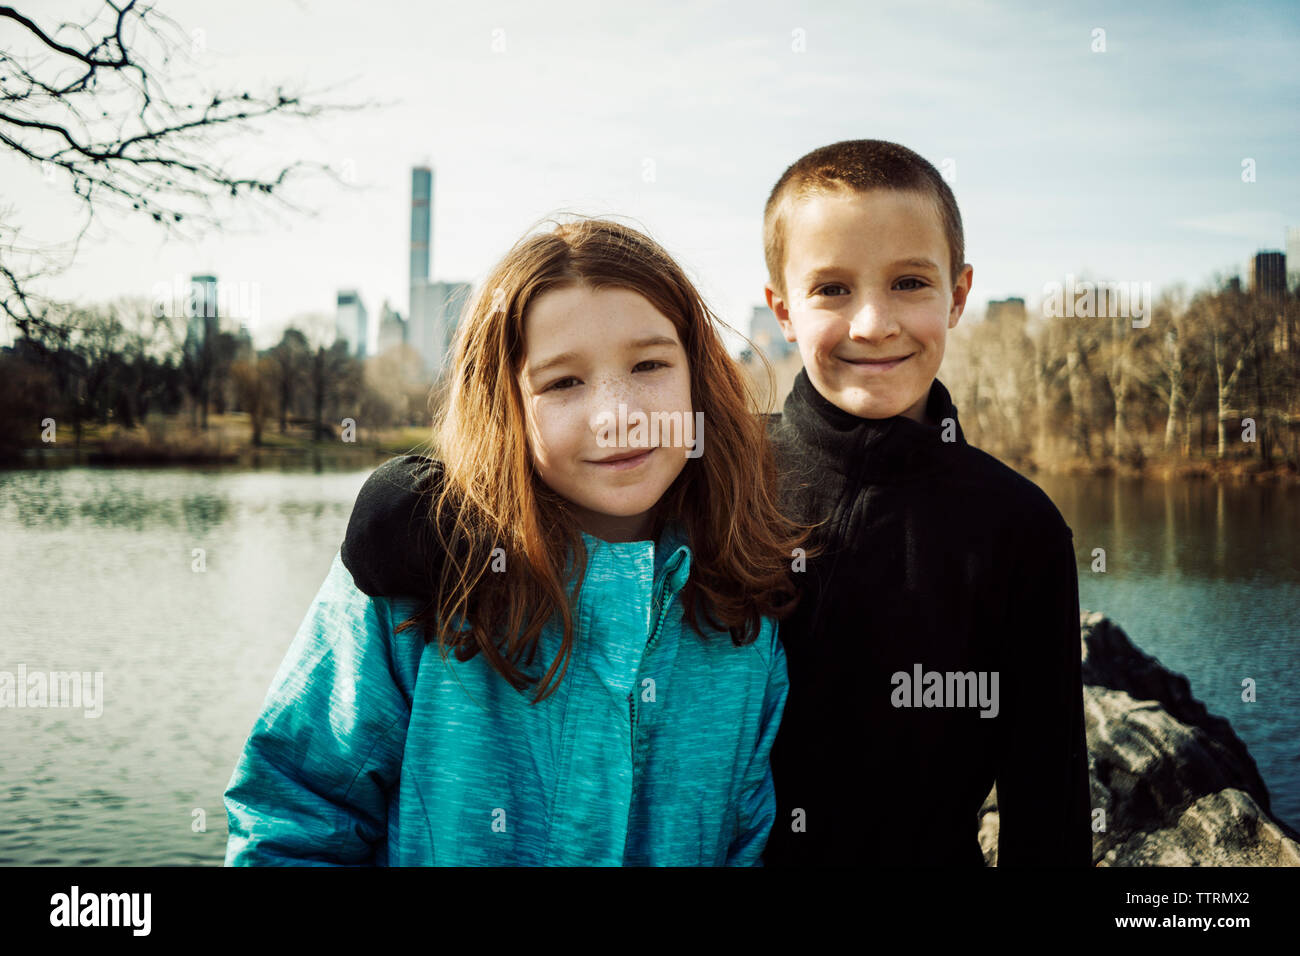 Portrait of smiling brother avec bras autour de sœur à lake in park Banque D'Images